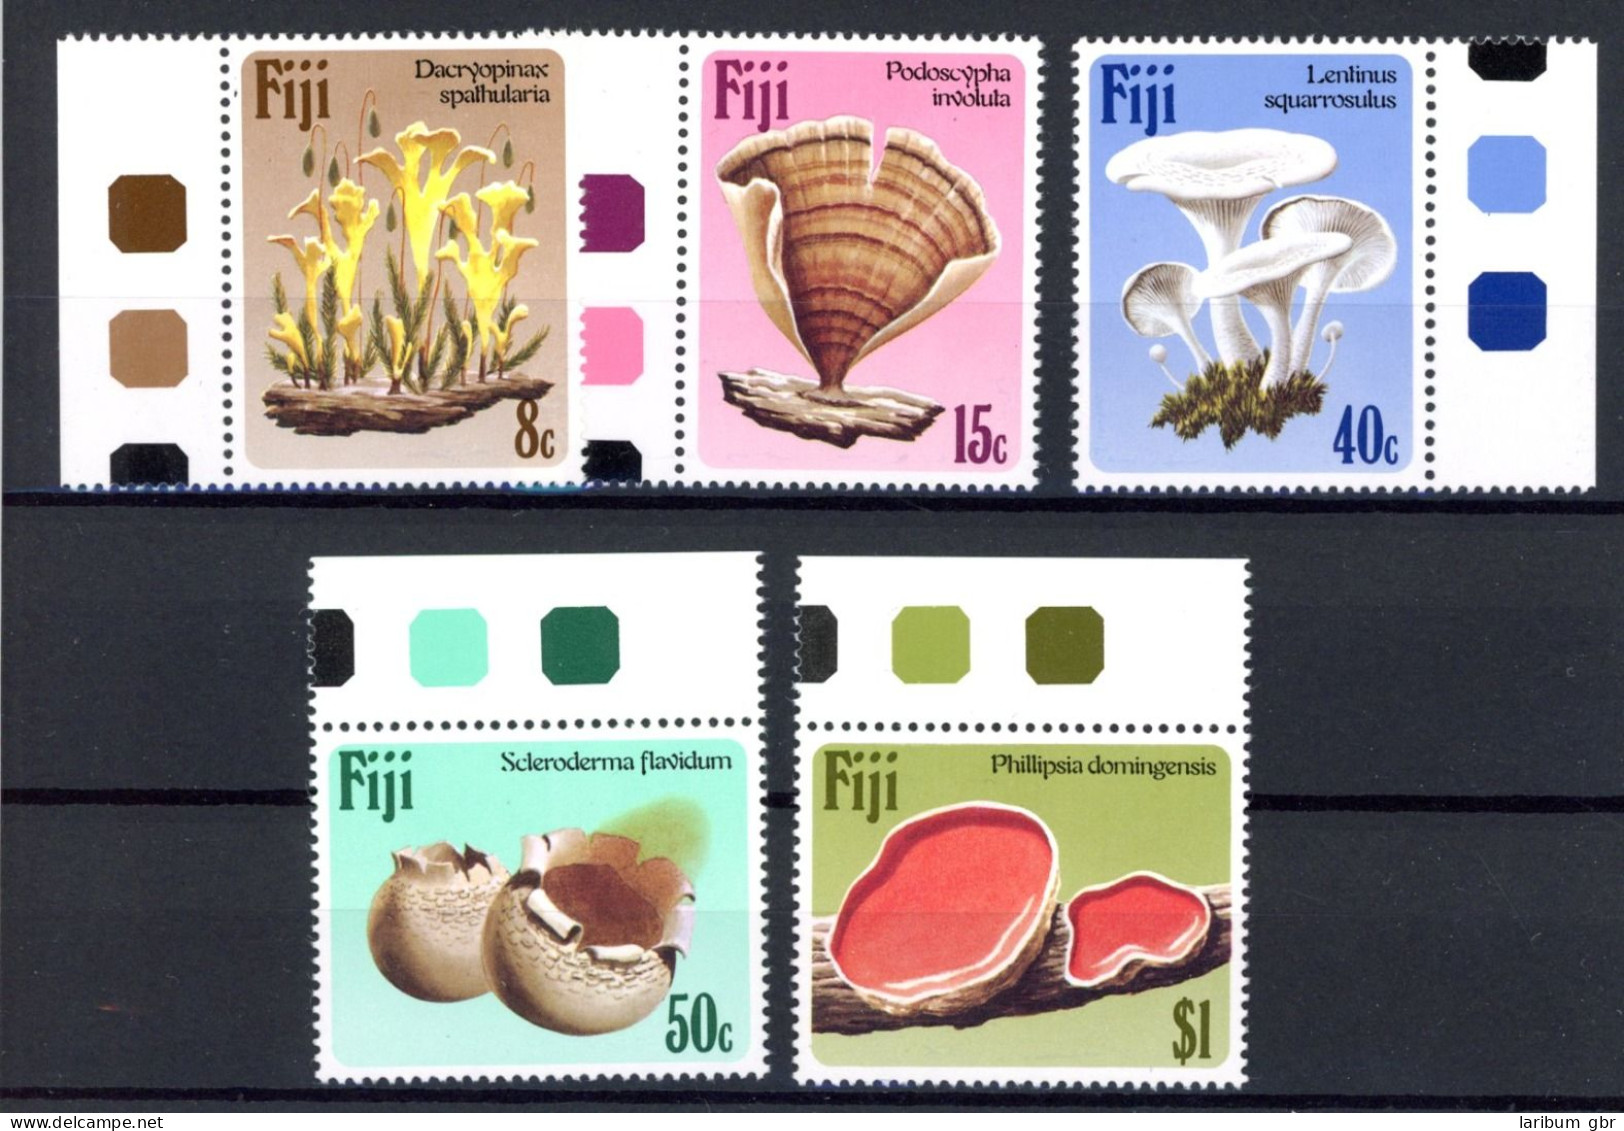 Fidschi Inseln 494-498 Postfrisch Pilze #JR798 - Cook Islands